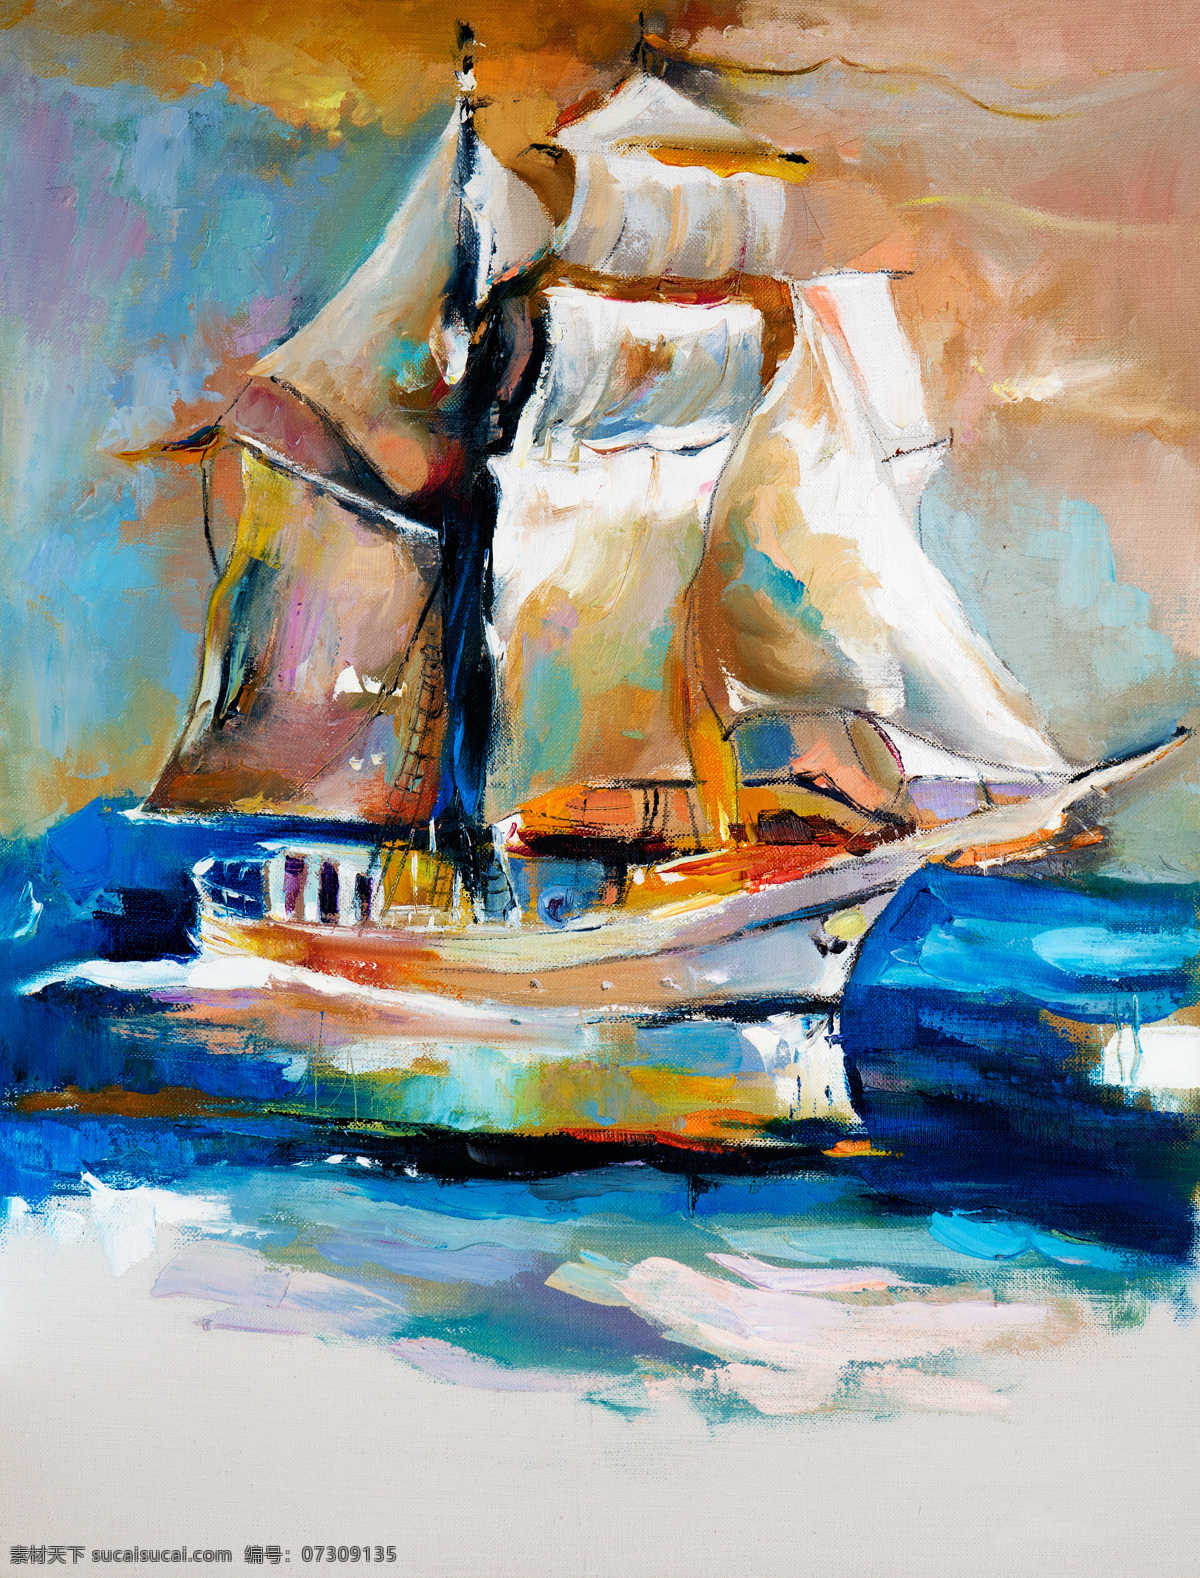 抽象 海面 帆船 油画 抽象画背景 风景画 装饰画 书画文 水彩画 无框画 绘画 书画文字 文化艺术